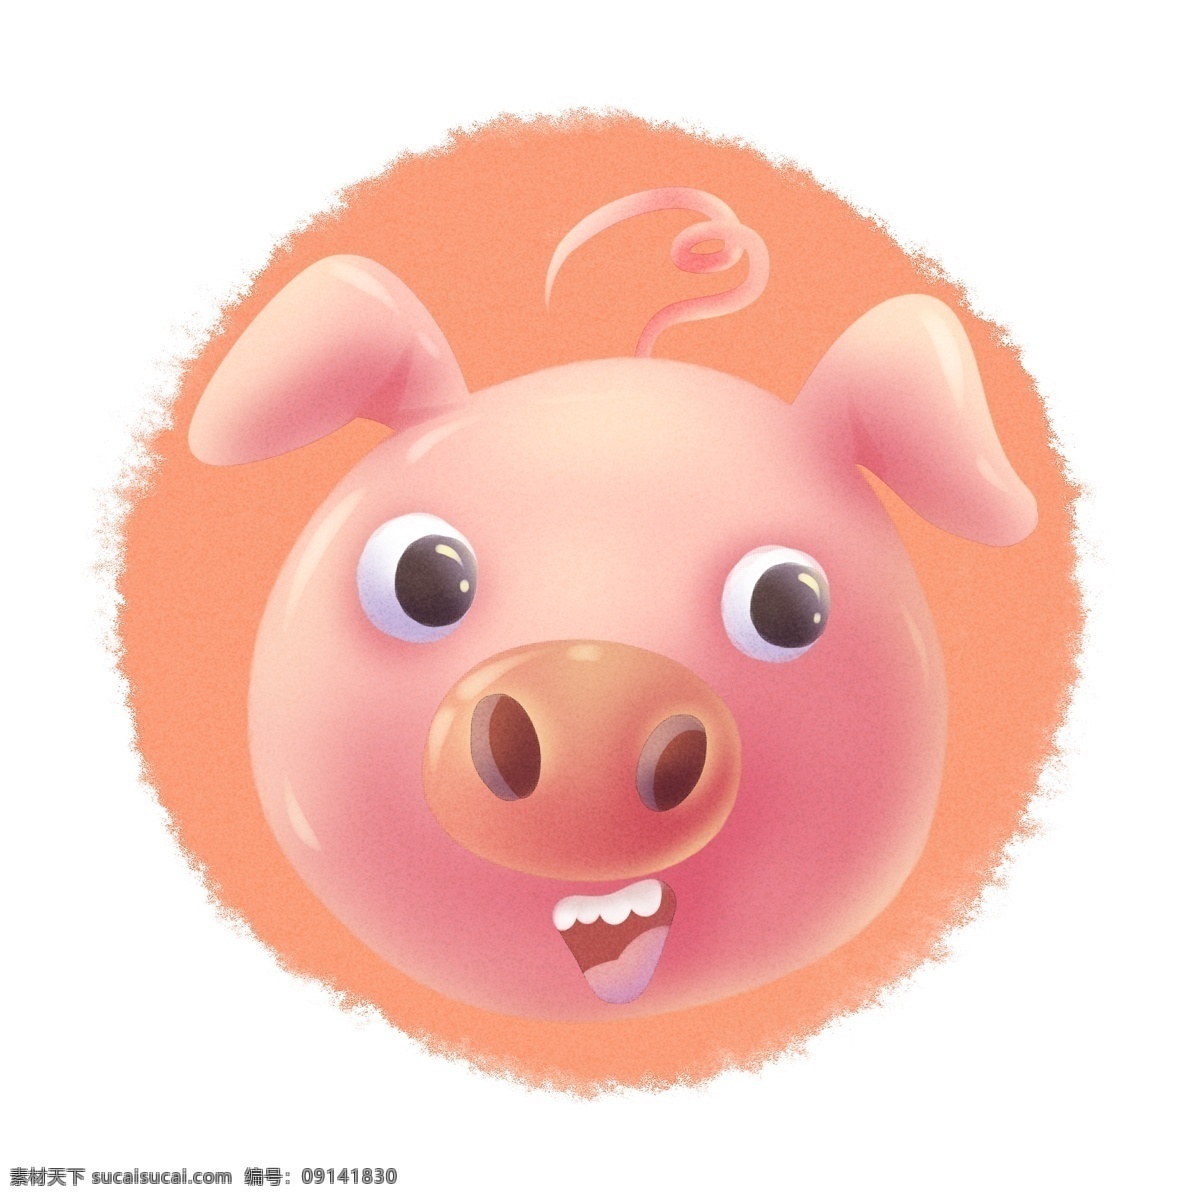 生肖猪头 可爱 卡通 动物 头像 猪头 小猪 生肖 分层